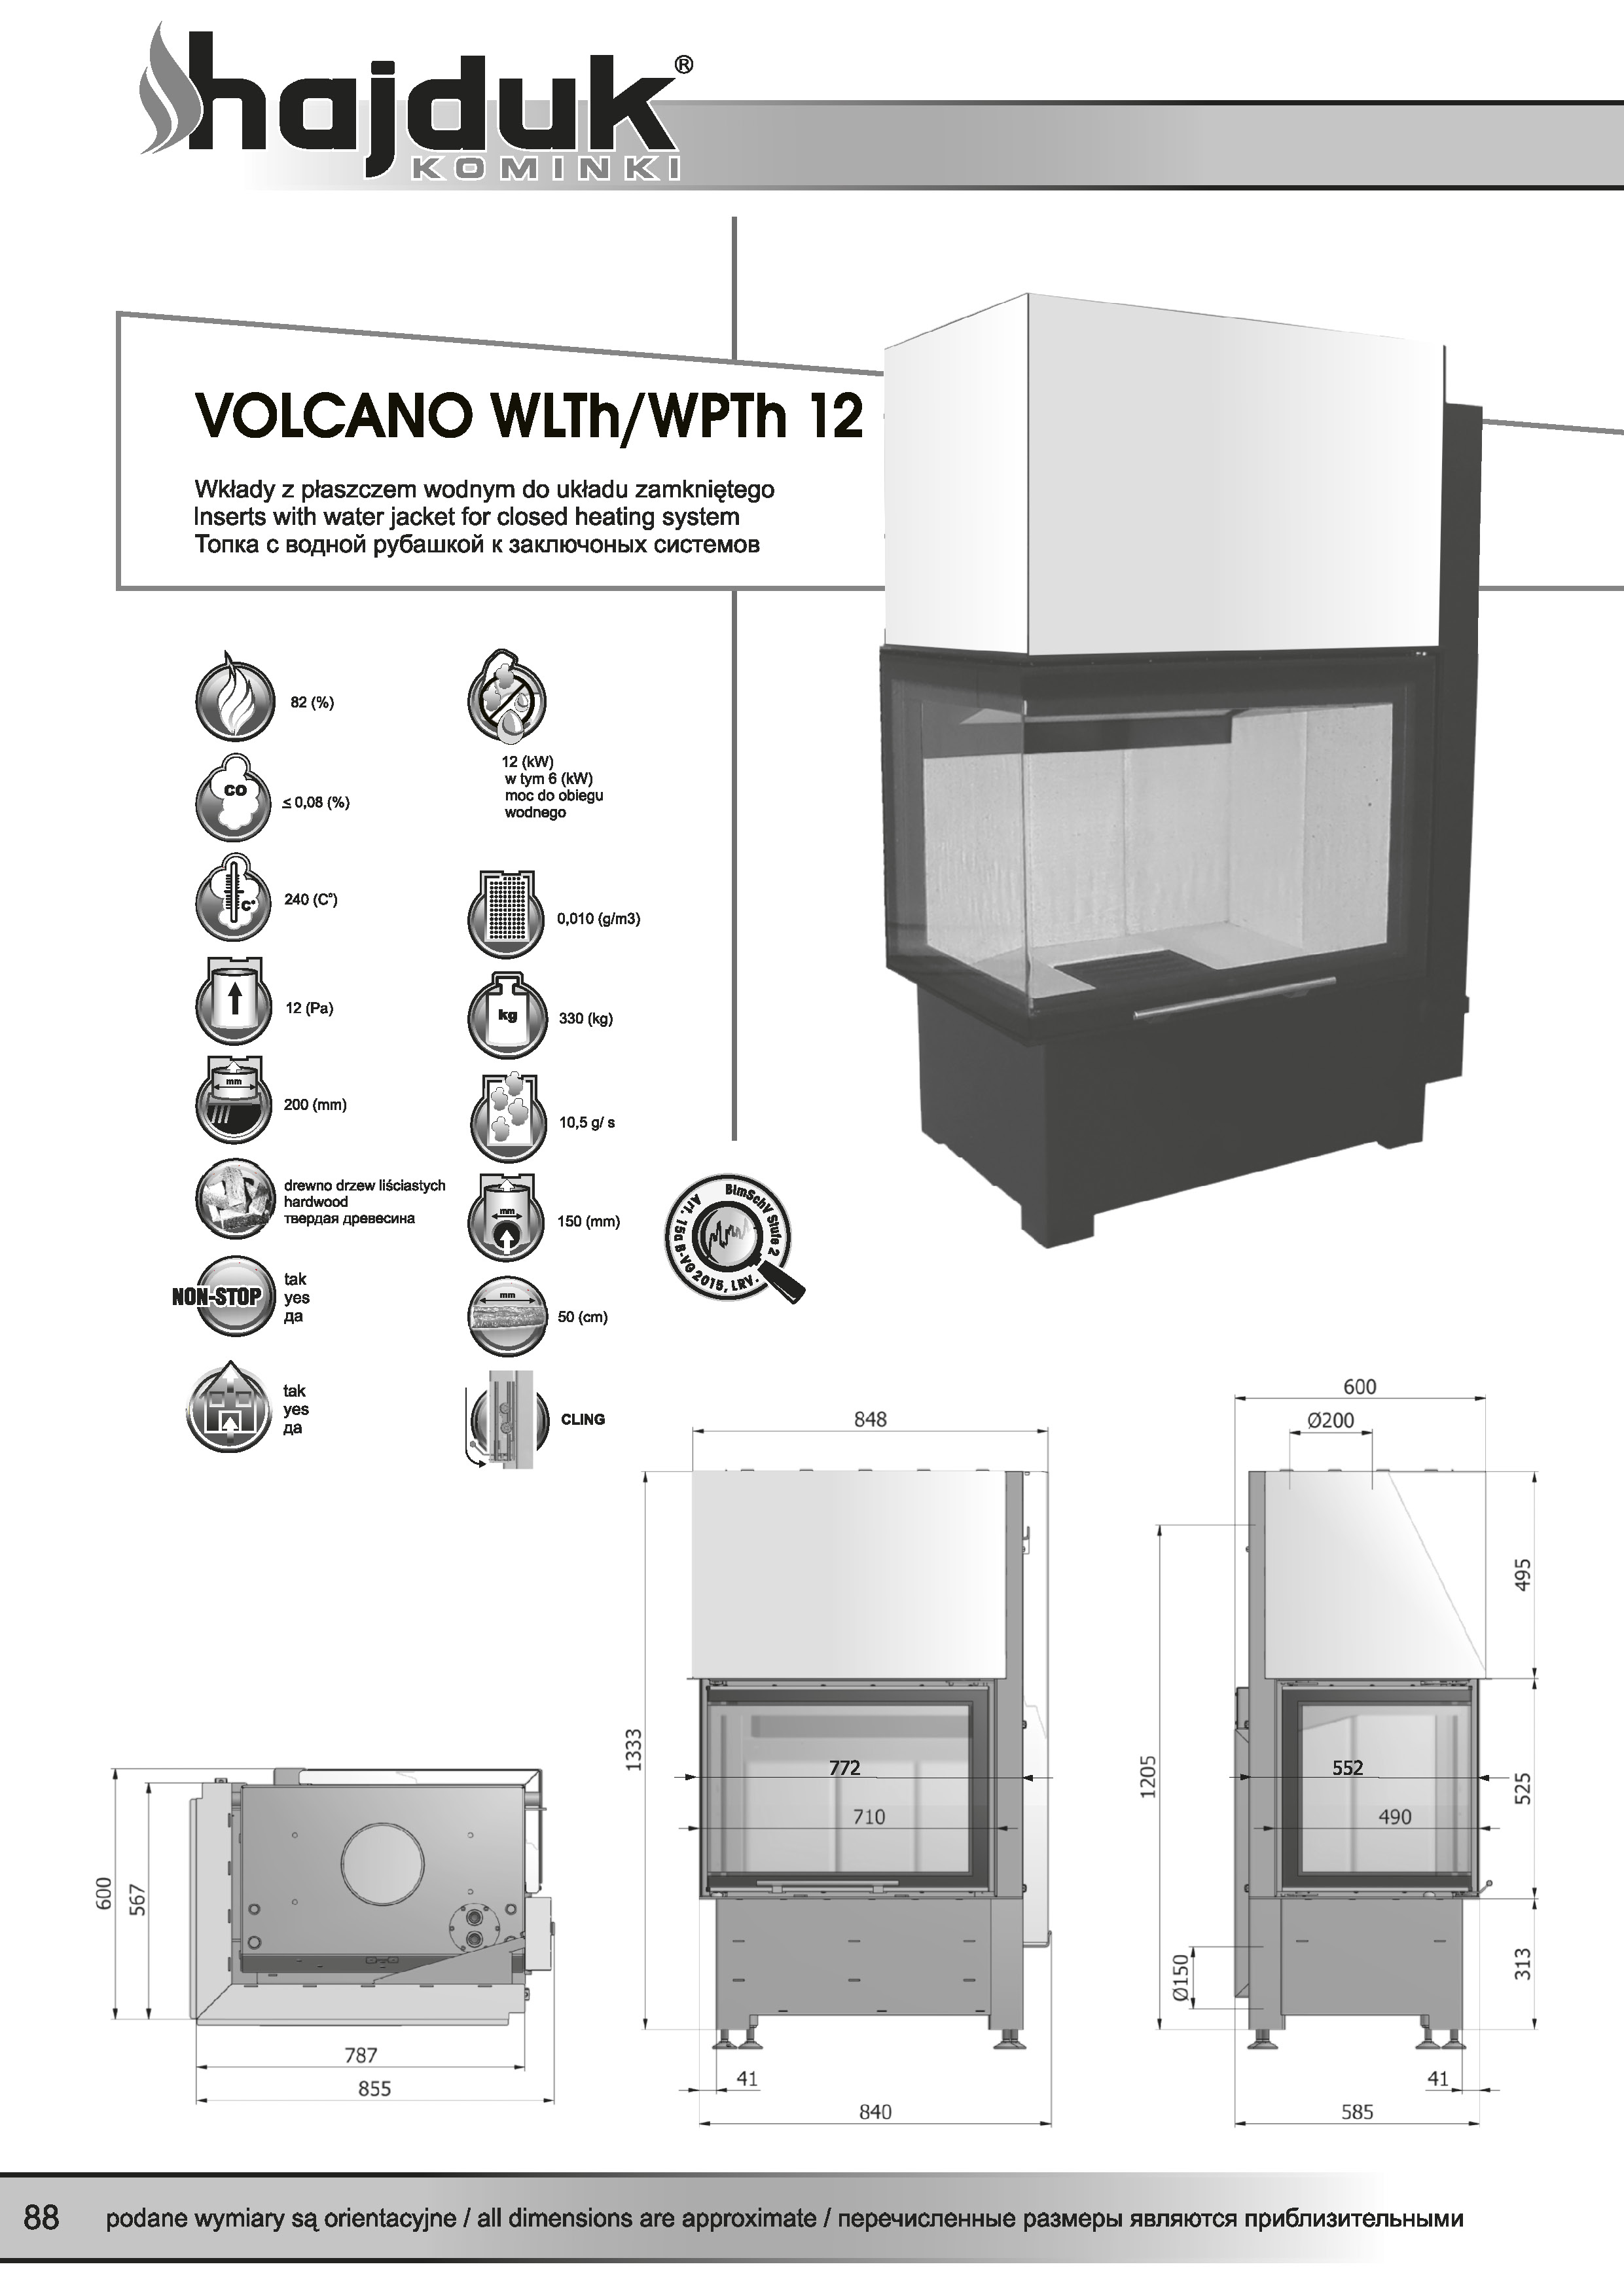 Volcano%20WLTh%20WPTh%20 %2012%20 %20karta%20techniczna - Wasserführende Kamineinsätz Hajduk  Volcano WPTh 12